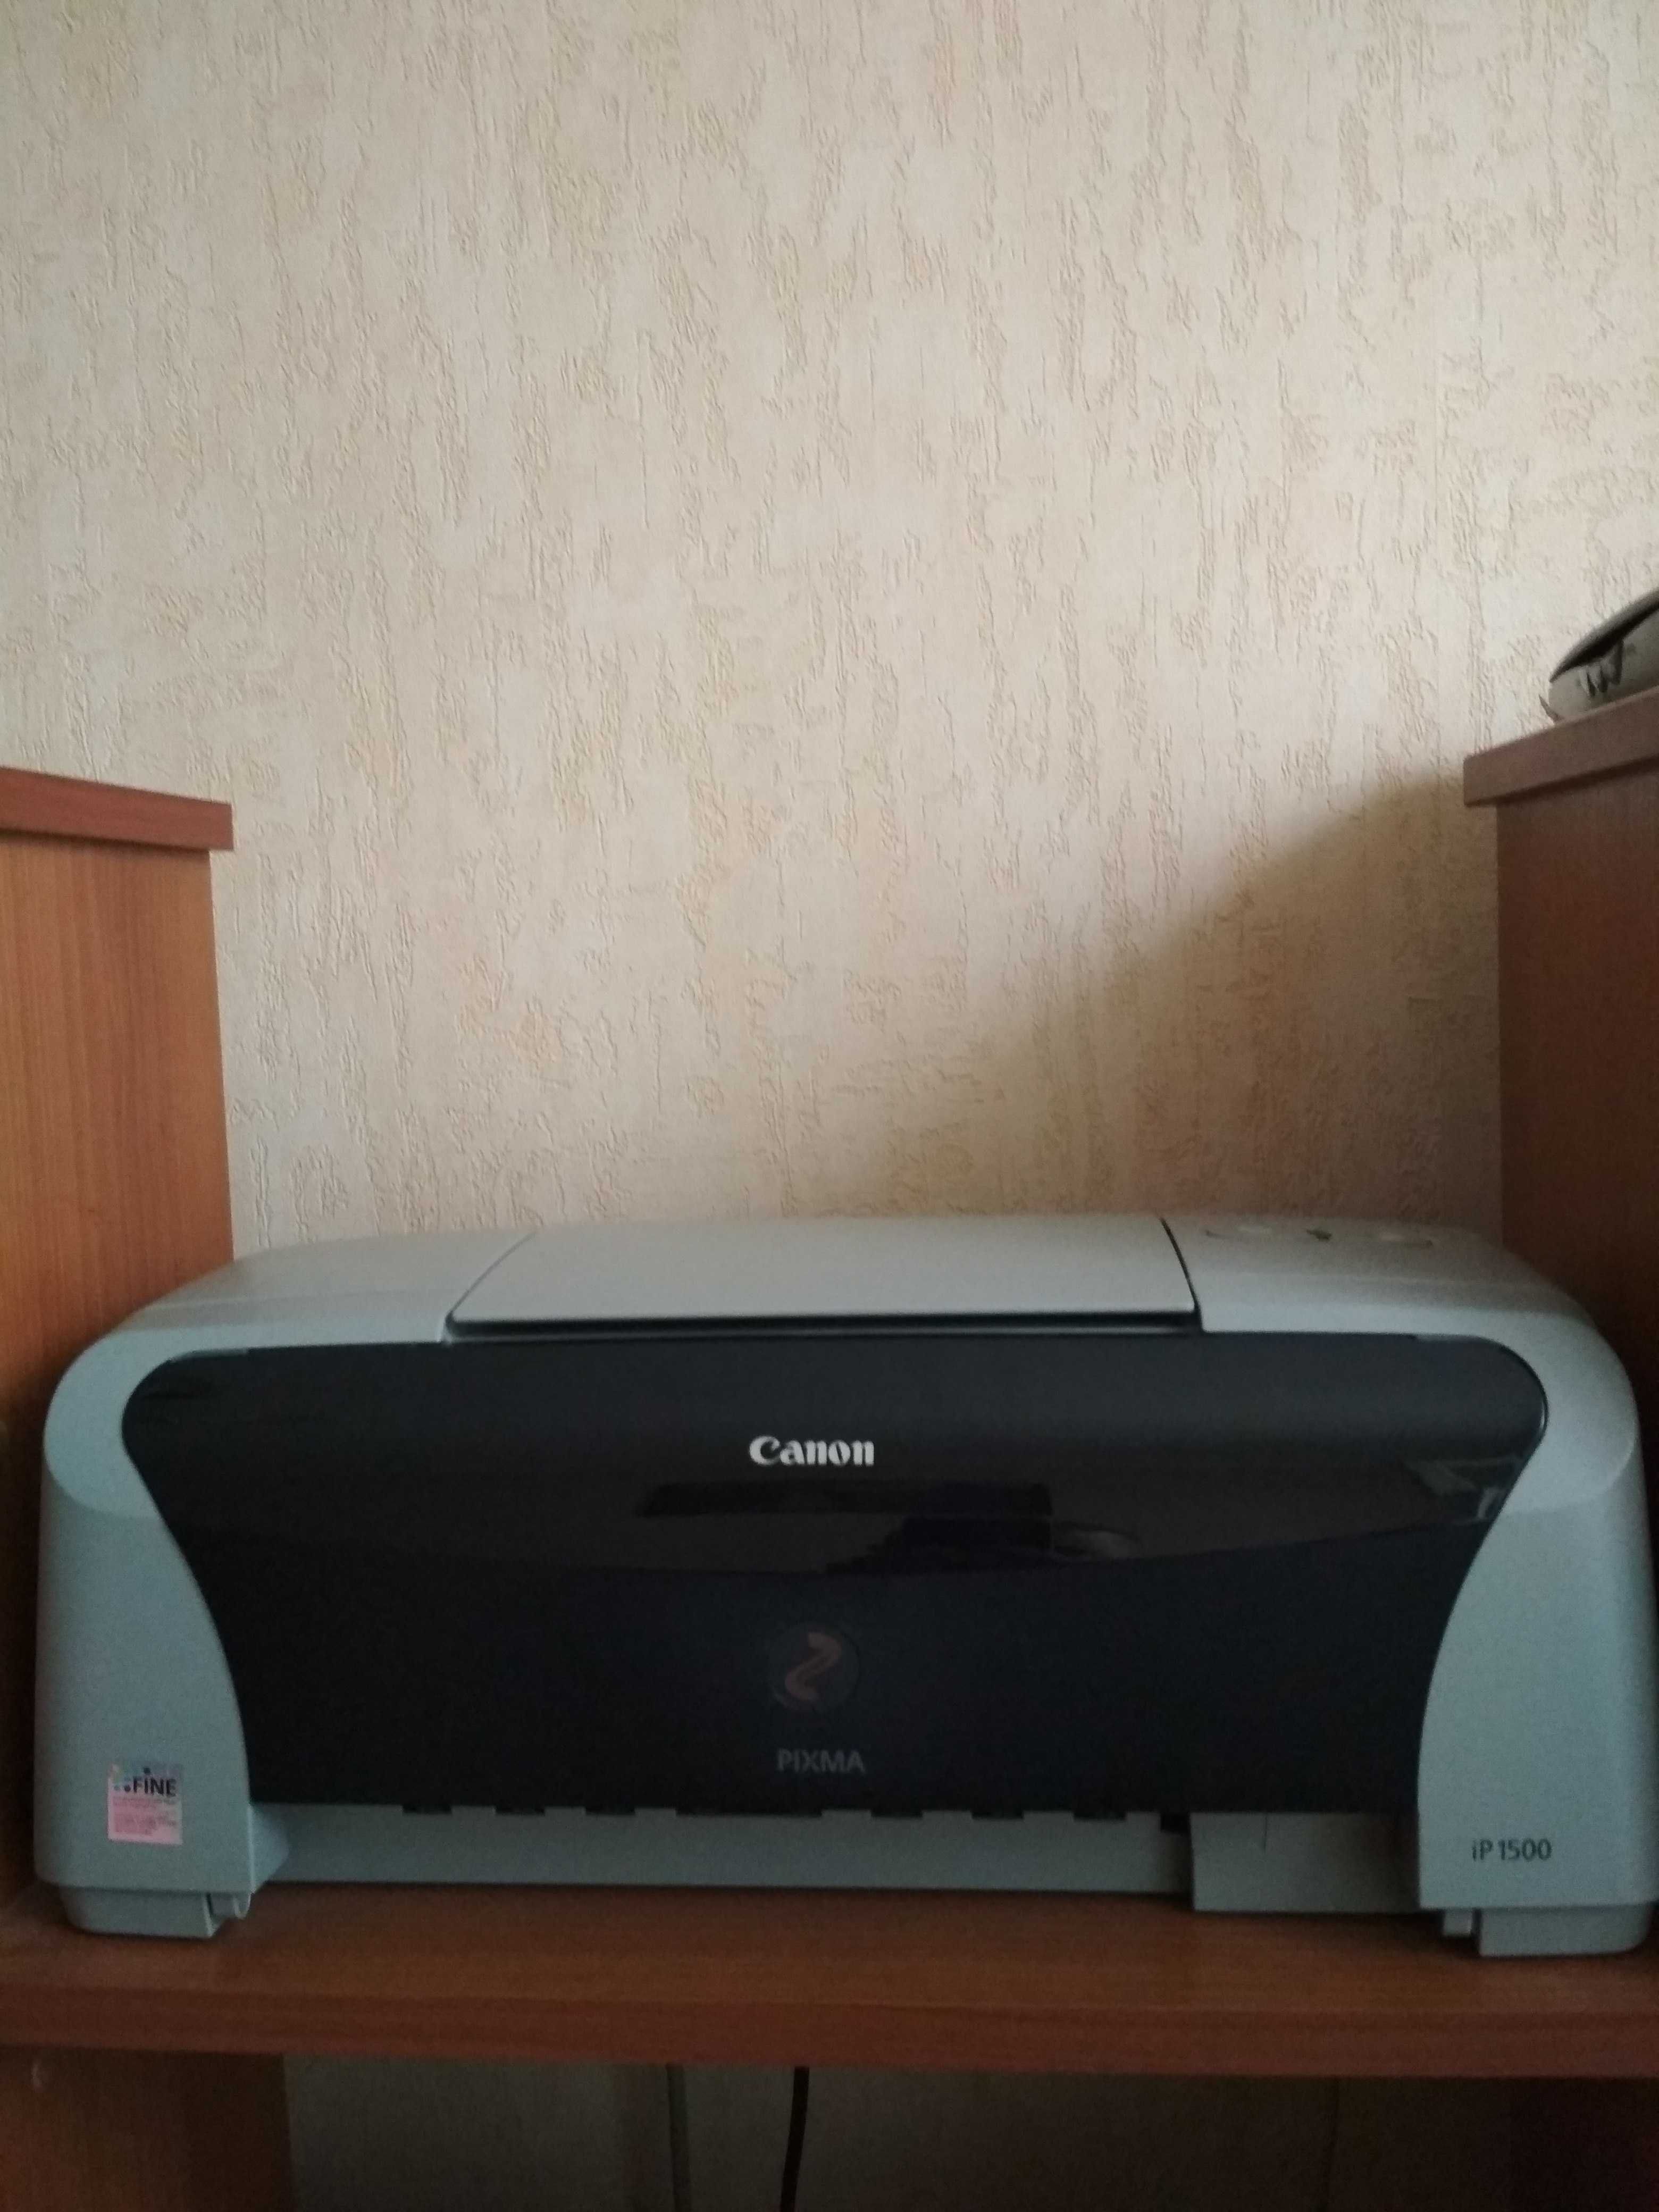 Принтер Canon Pixma 1500